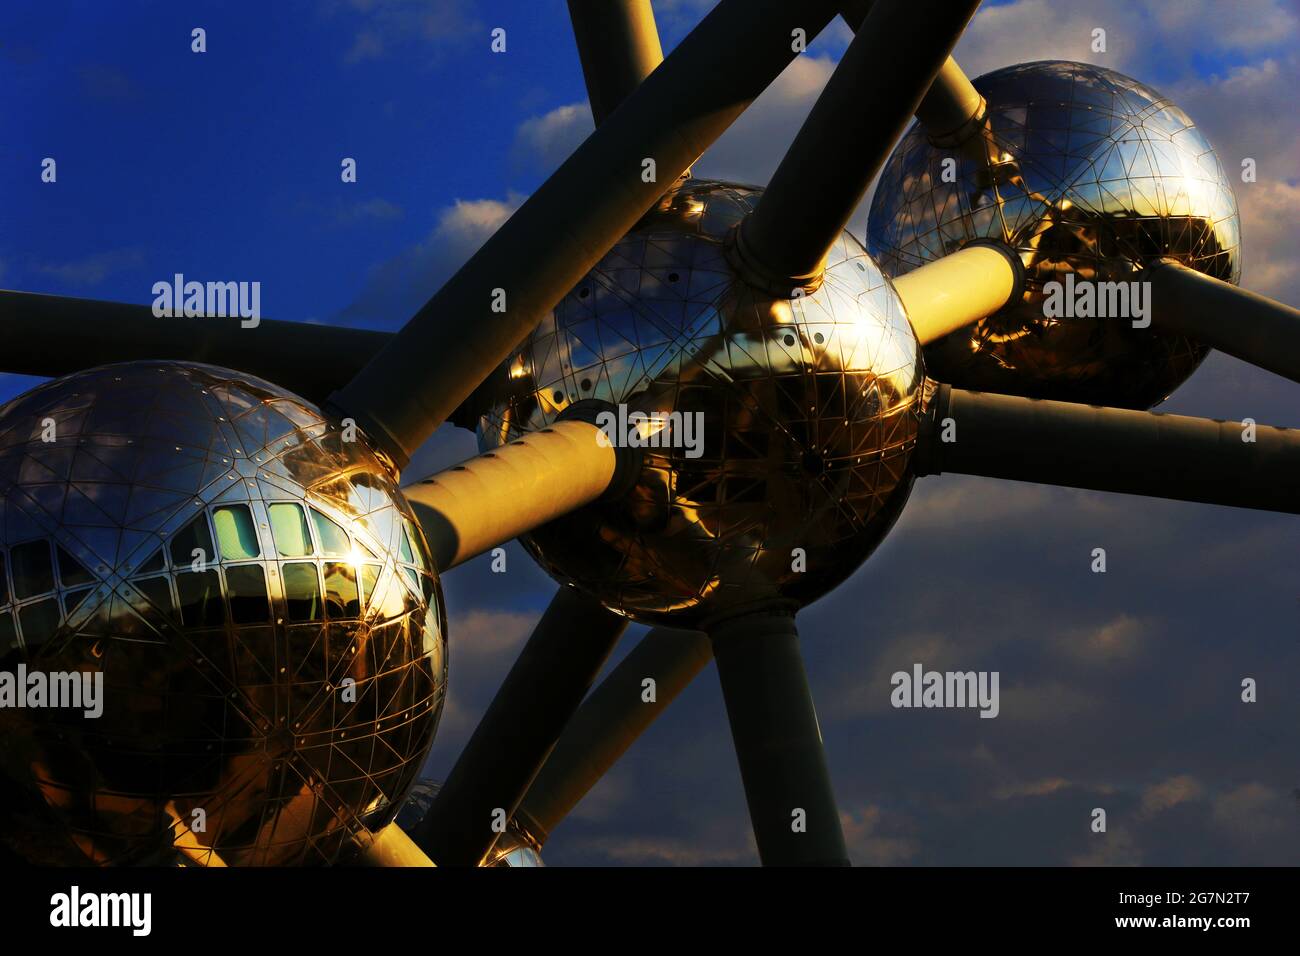 Atomium - Darstellung einer chemischen Verbindung aus Aluminium  im weltbekannten Bauwerk in Brüssel anlässlich einer Expo in Belgien Stock Photo